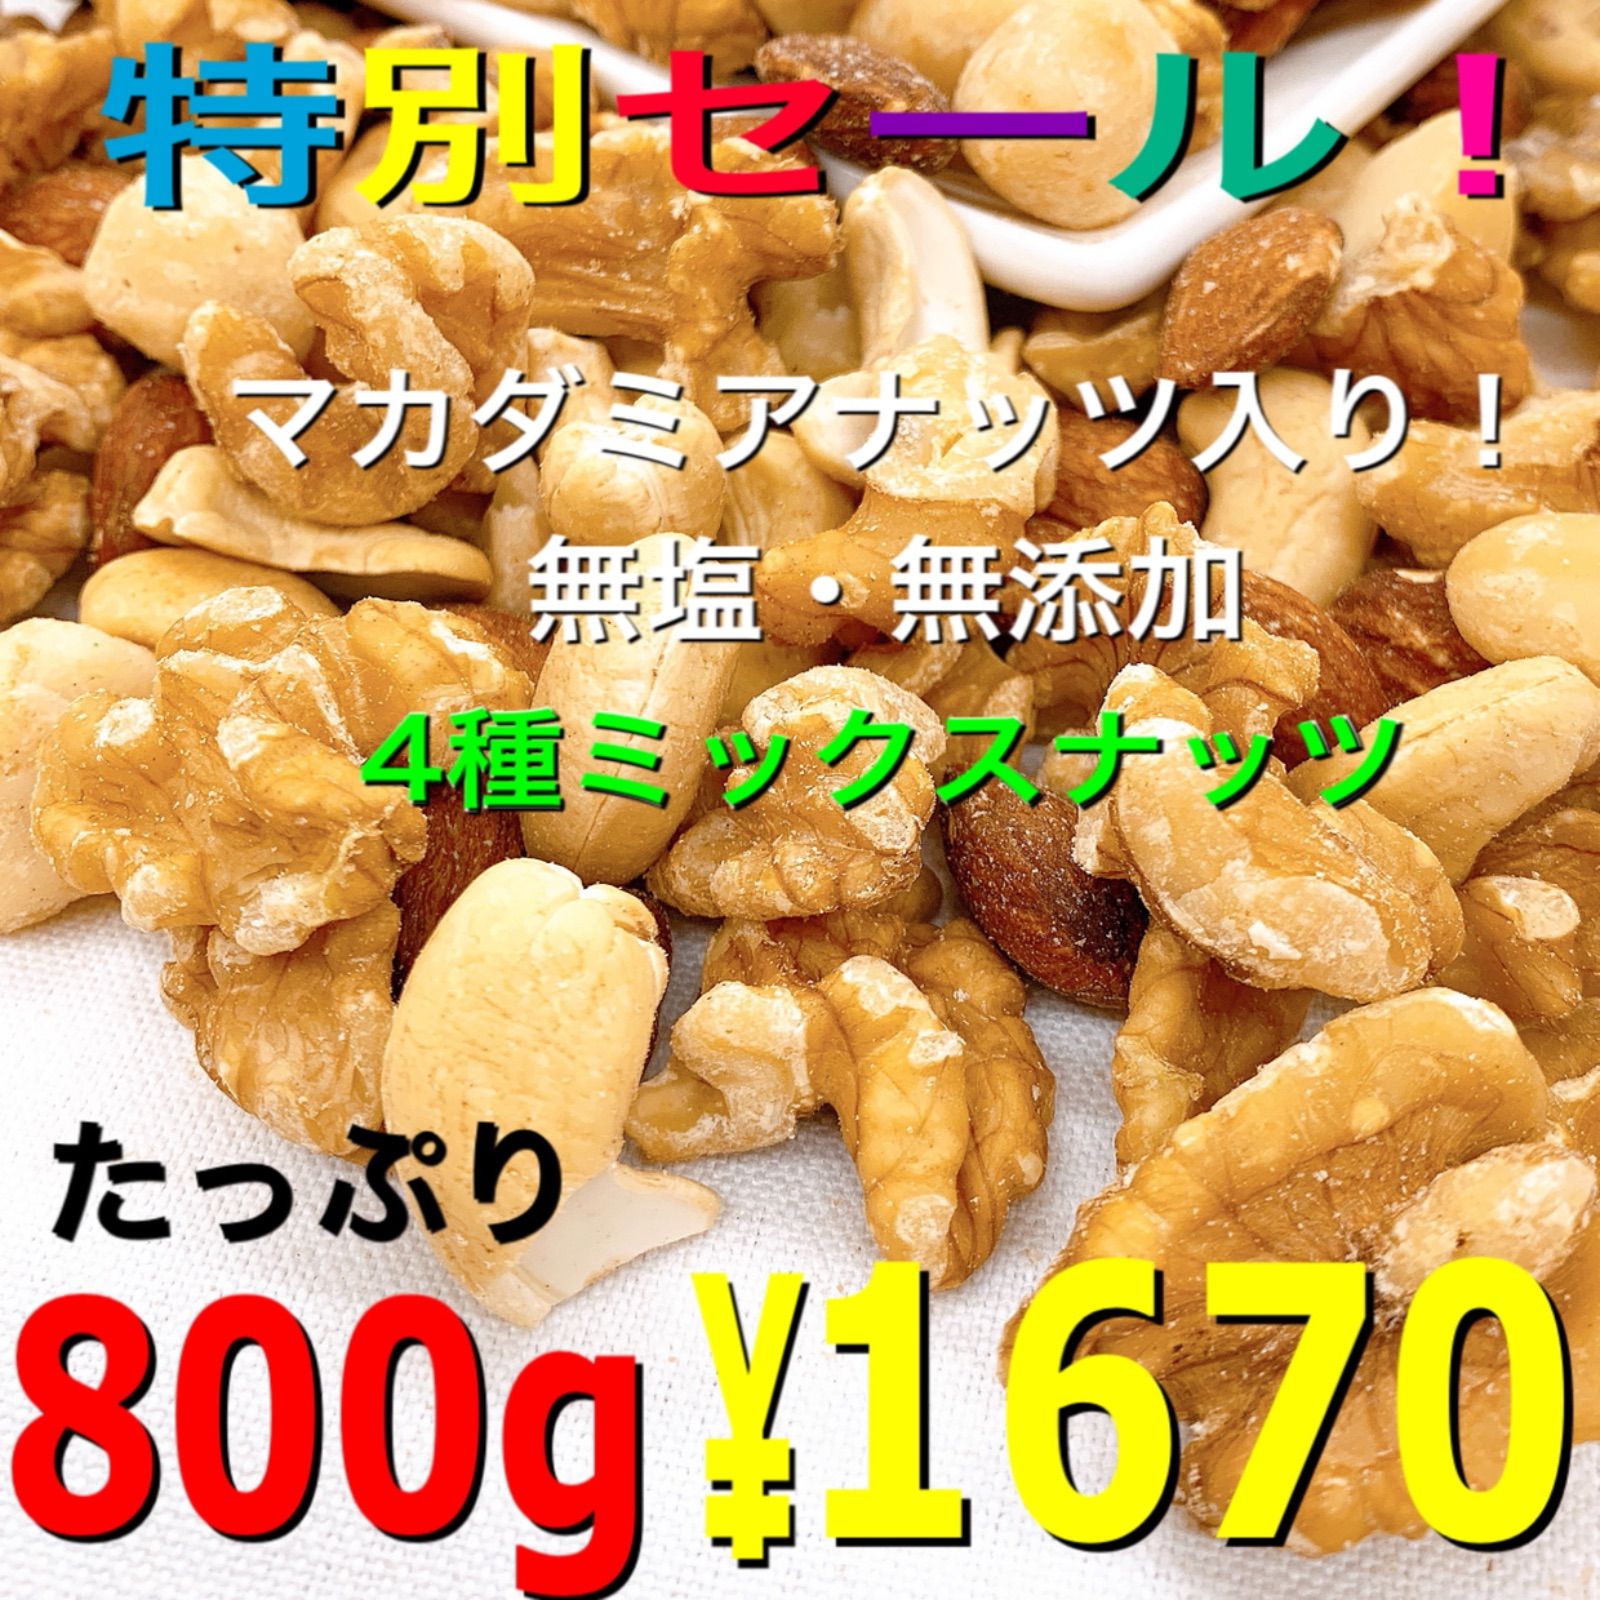 ♏️⭐️ 4種ミックスナッツ 800g ⭐️♏️素焼きアーモンド 無添加 - 食品